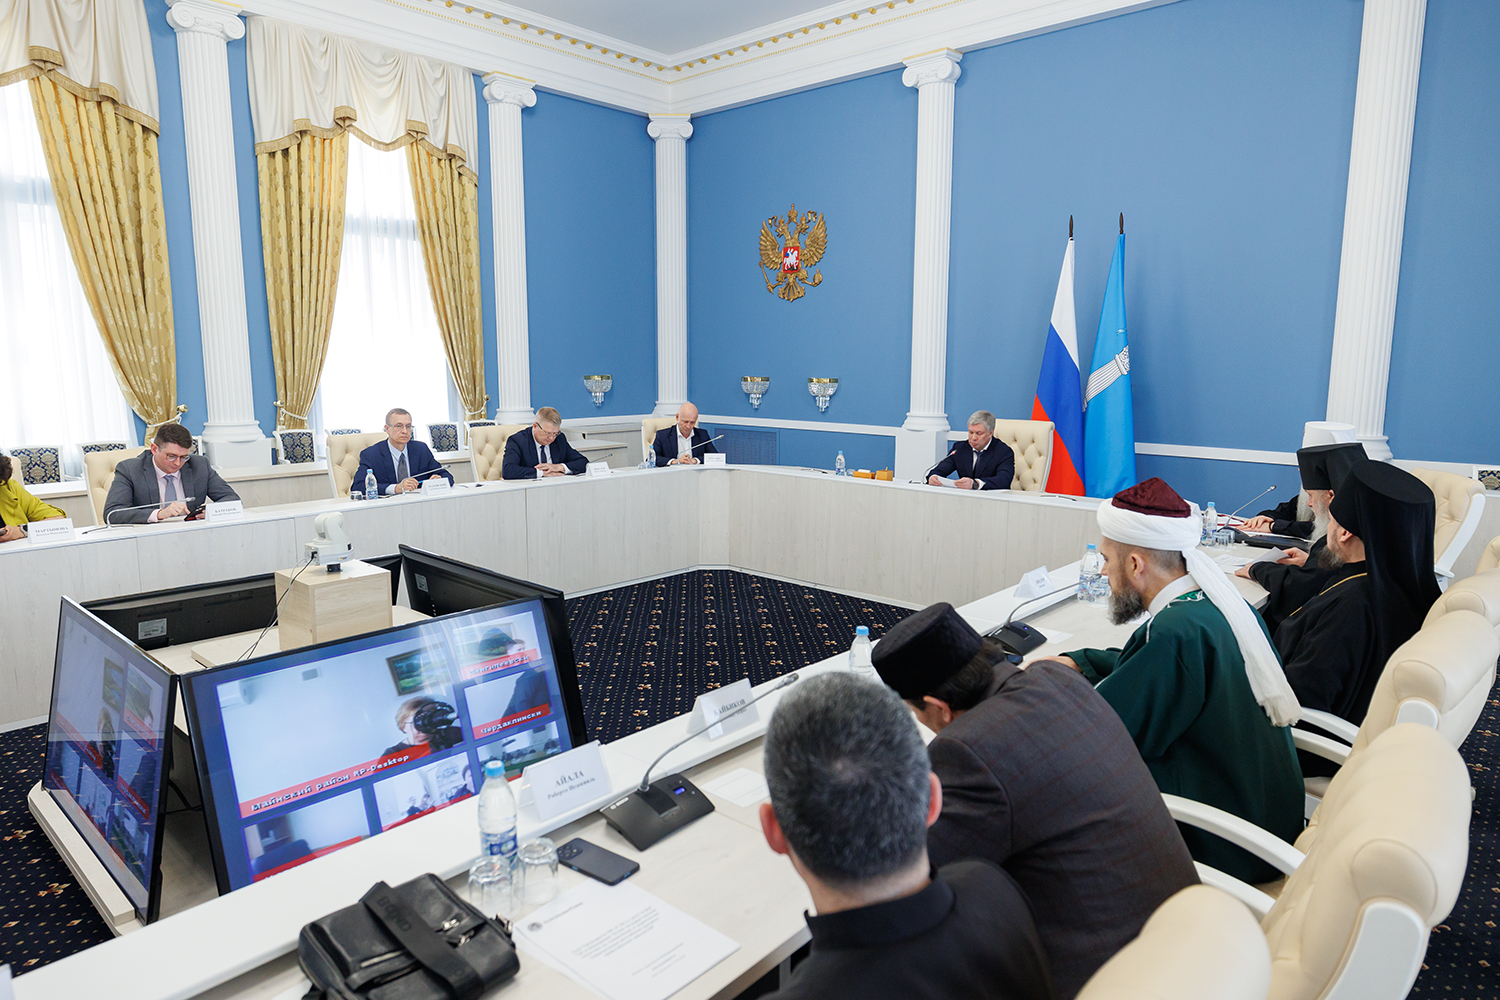 Ульяновск. Заседание Совета по взаимодействию с религиозными организациями при губернаторе области.